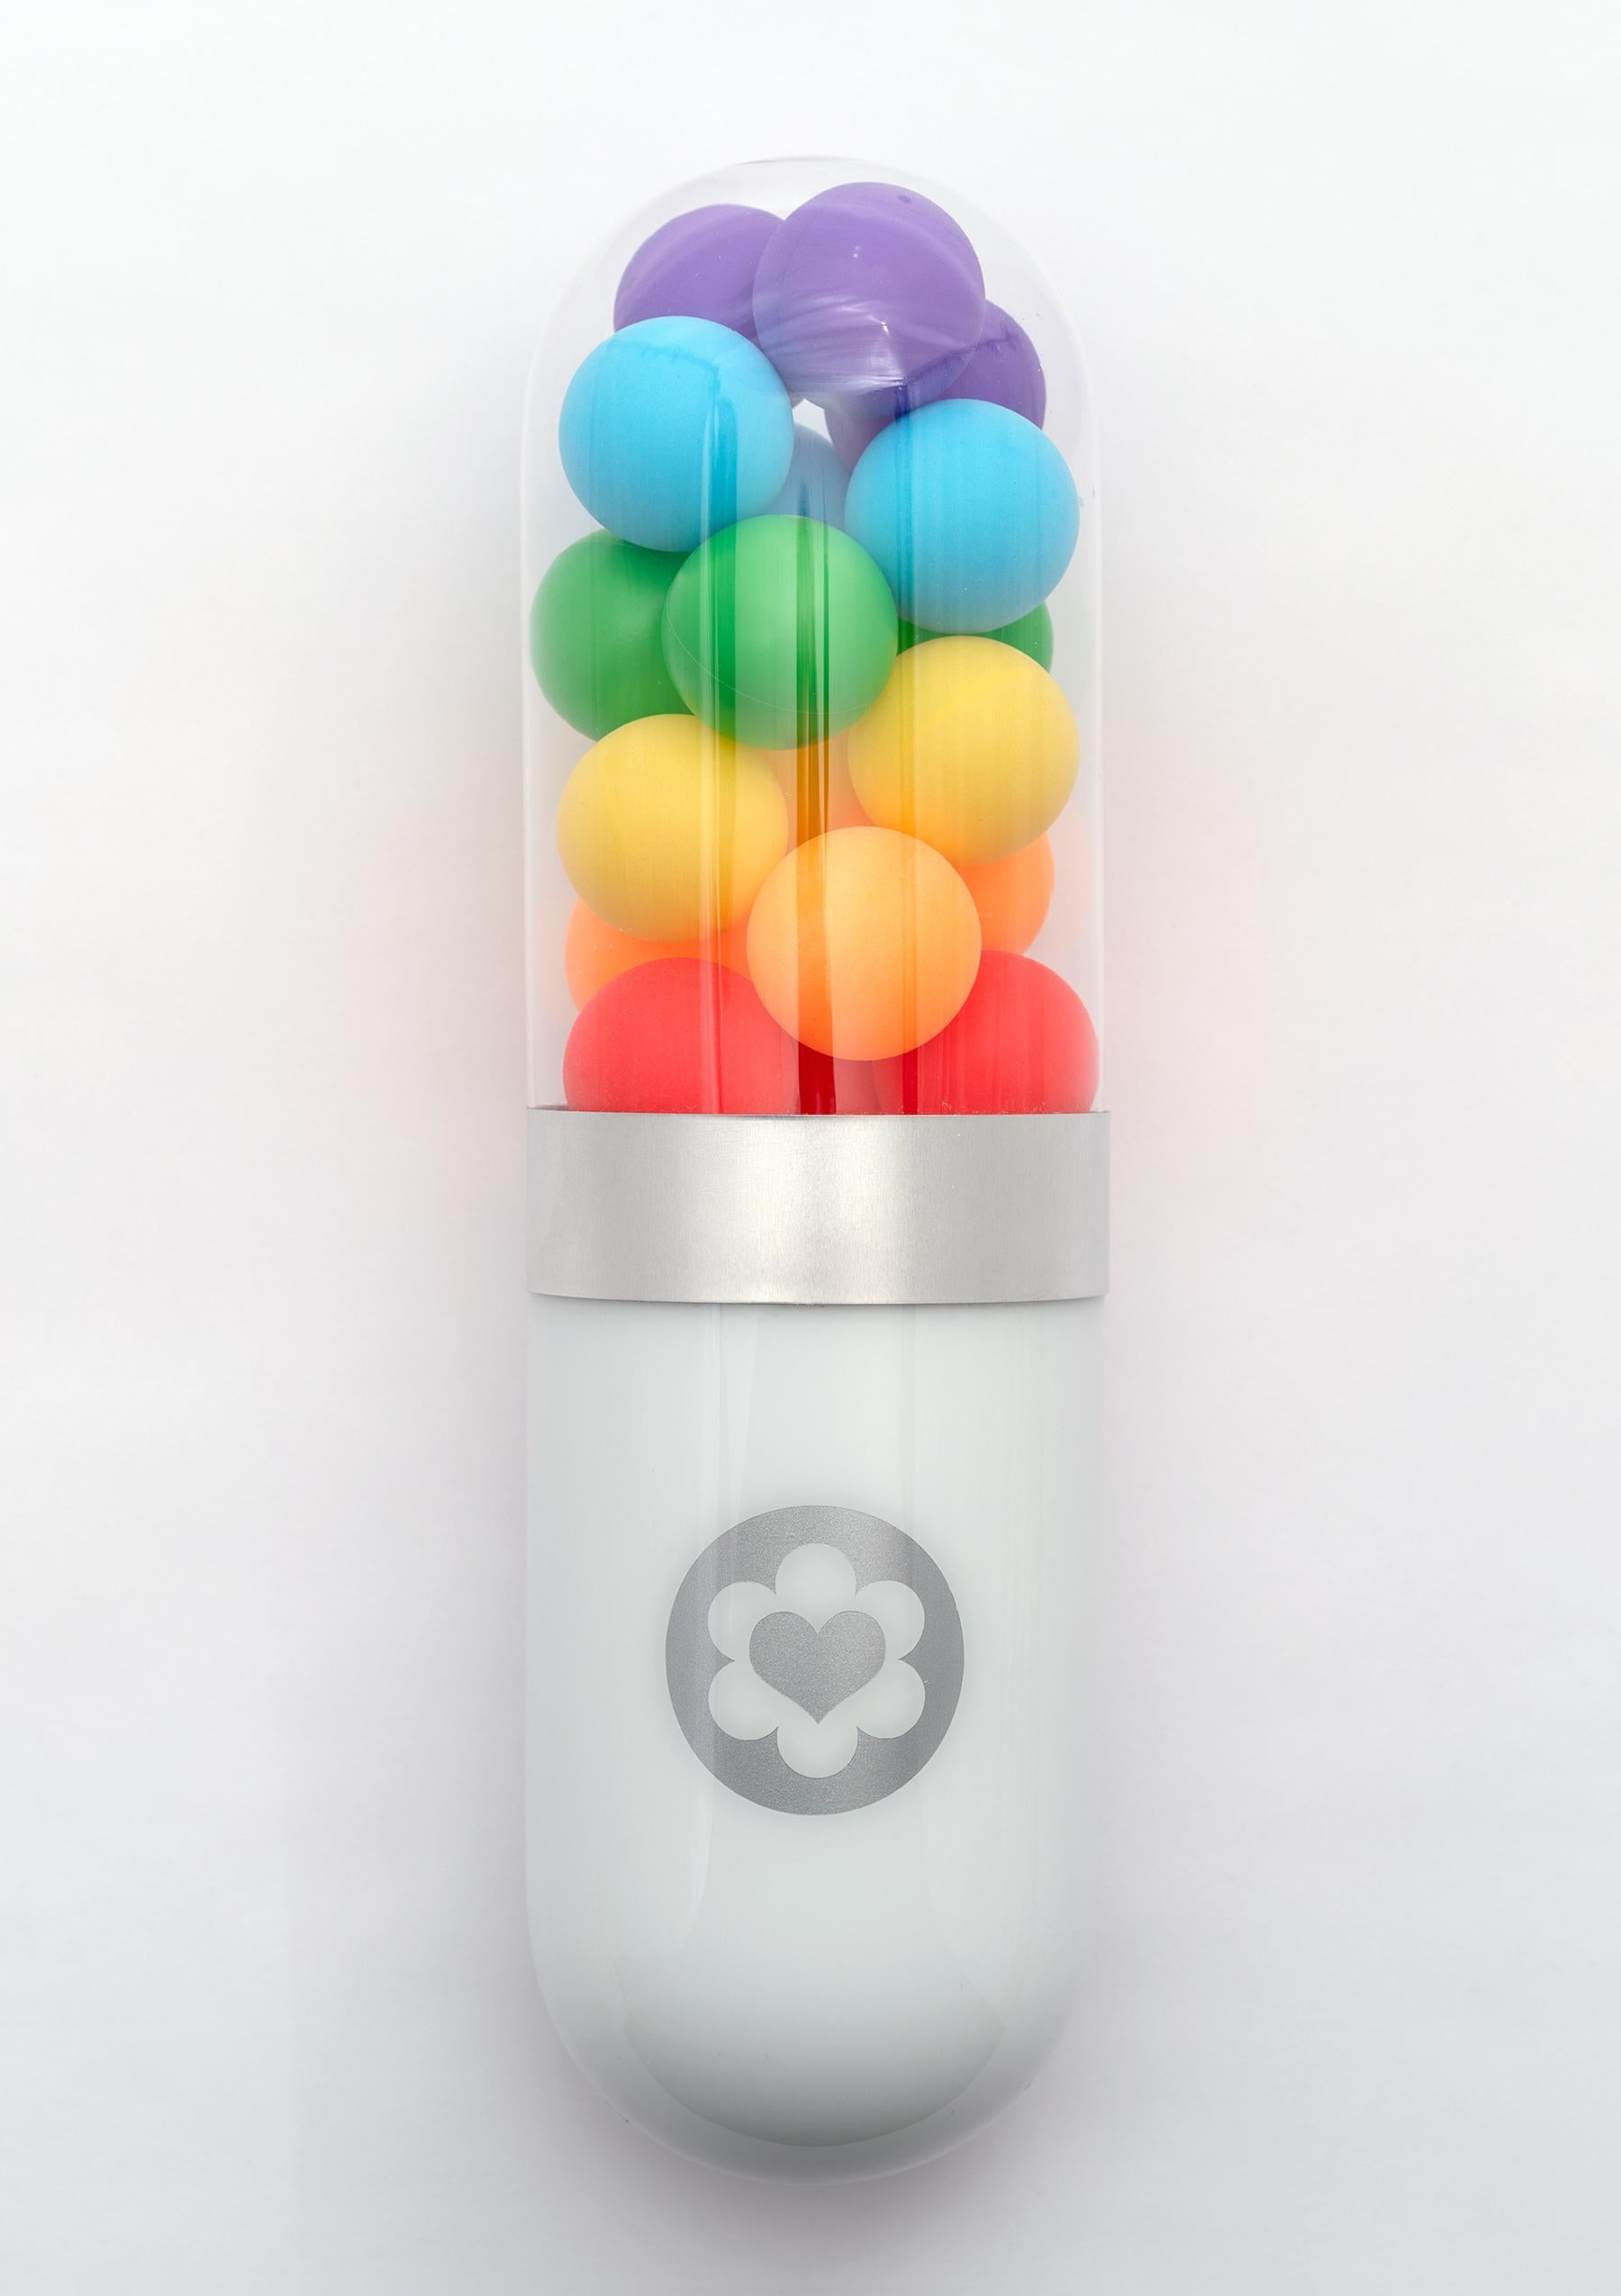 Edie Nadelhaft Still-Life Sculpture - Love Wins - Glass rainbow color pill sculpture 